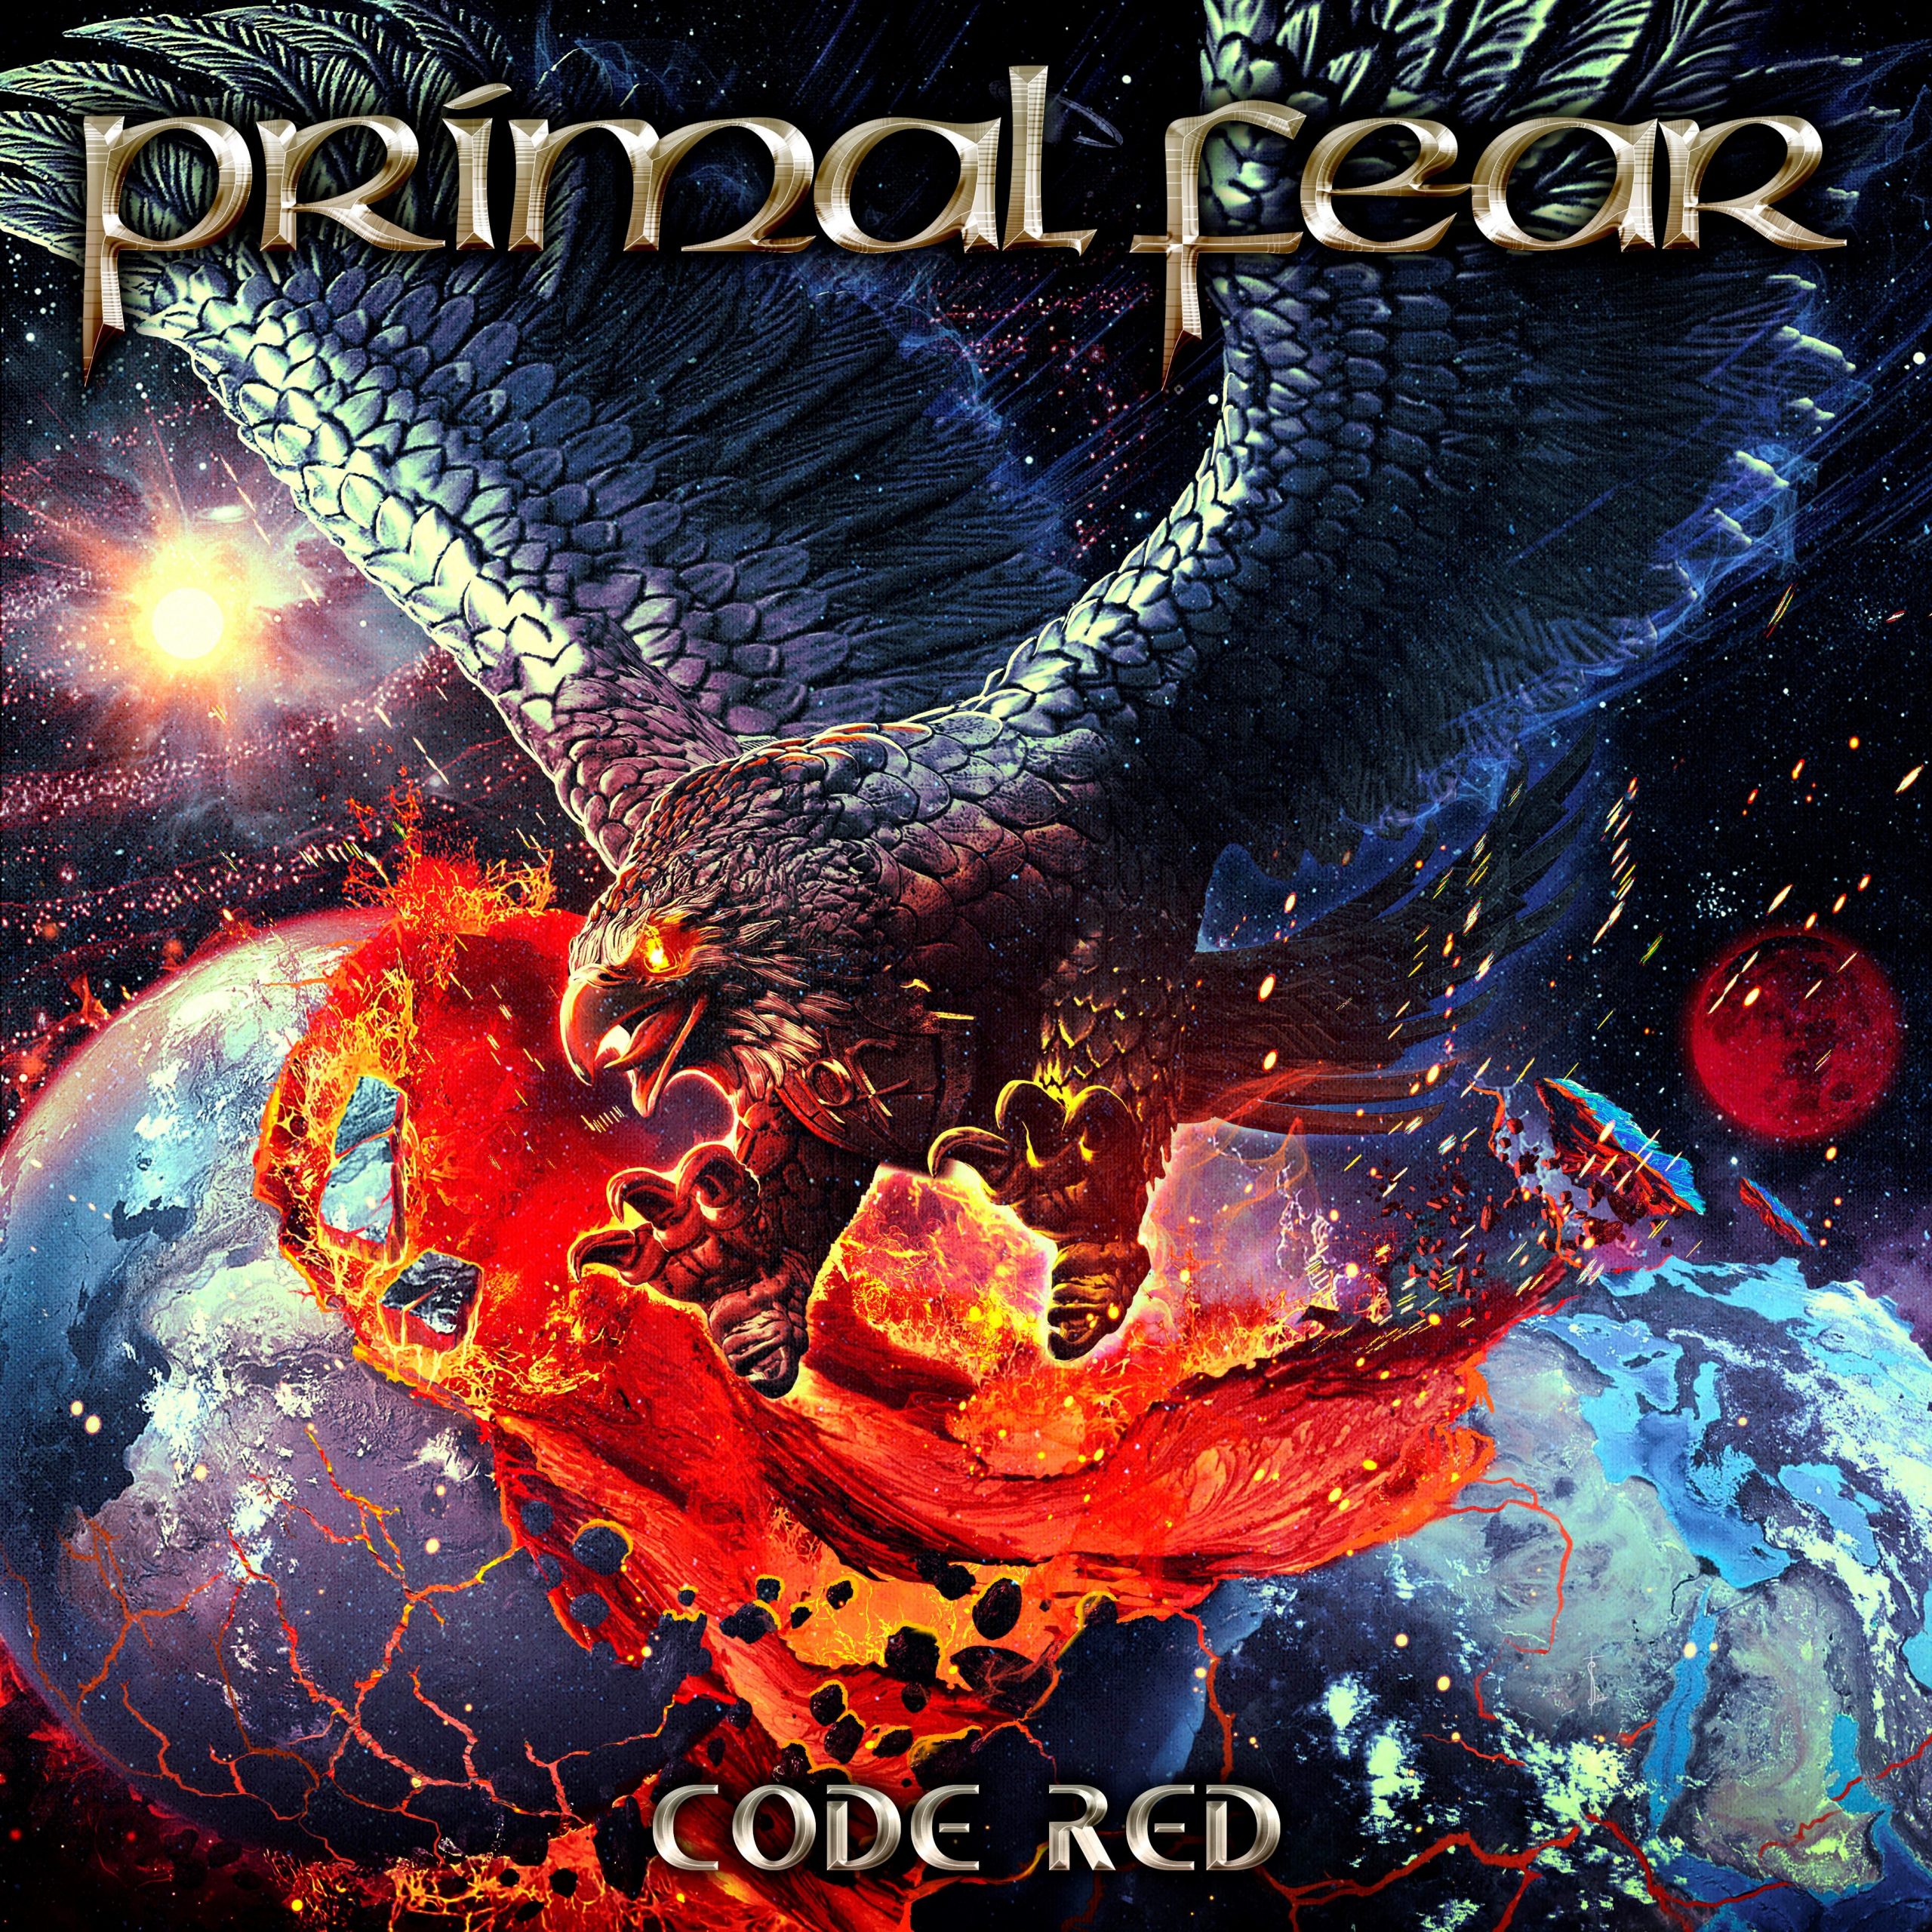 primal-fear-neues-album-code-red-erscheint-im-september-tourdaten-mit-the-unity-veroeffentlicht